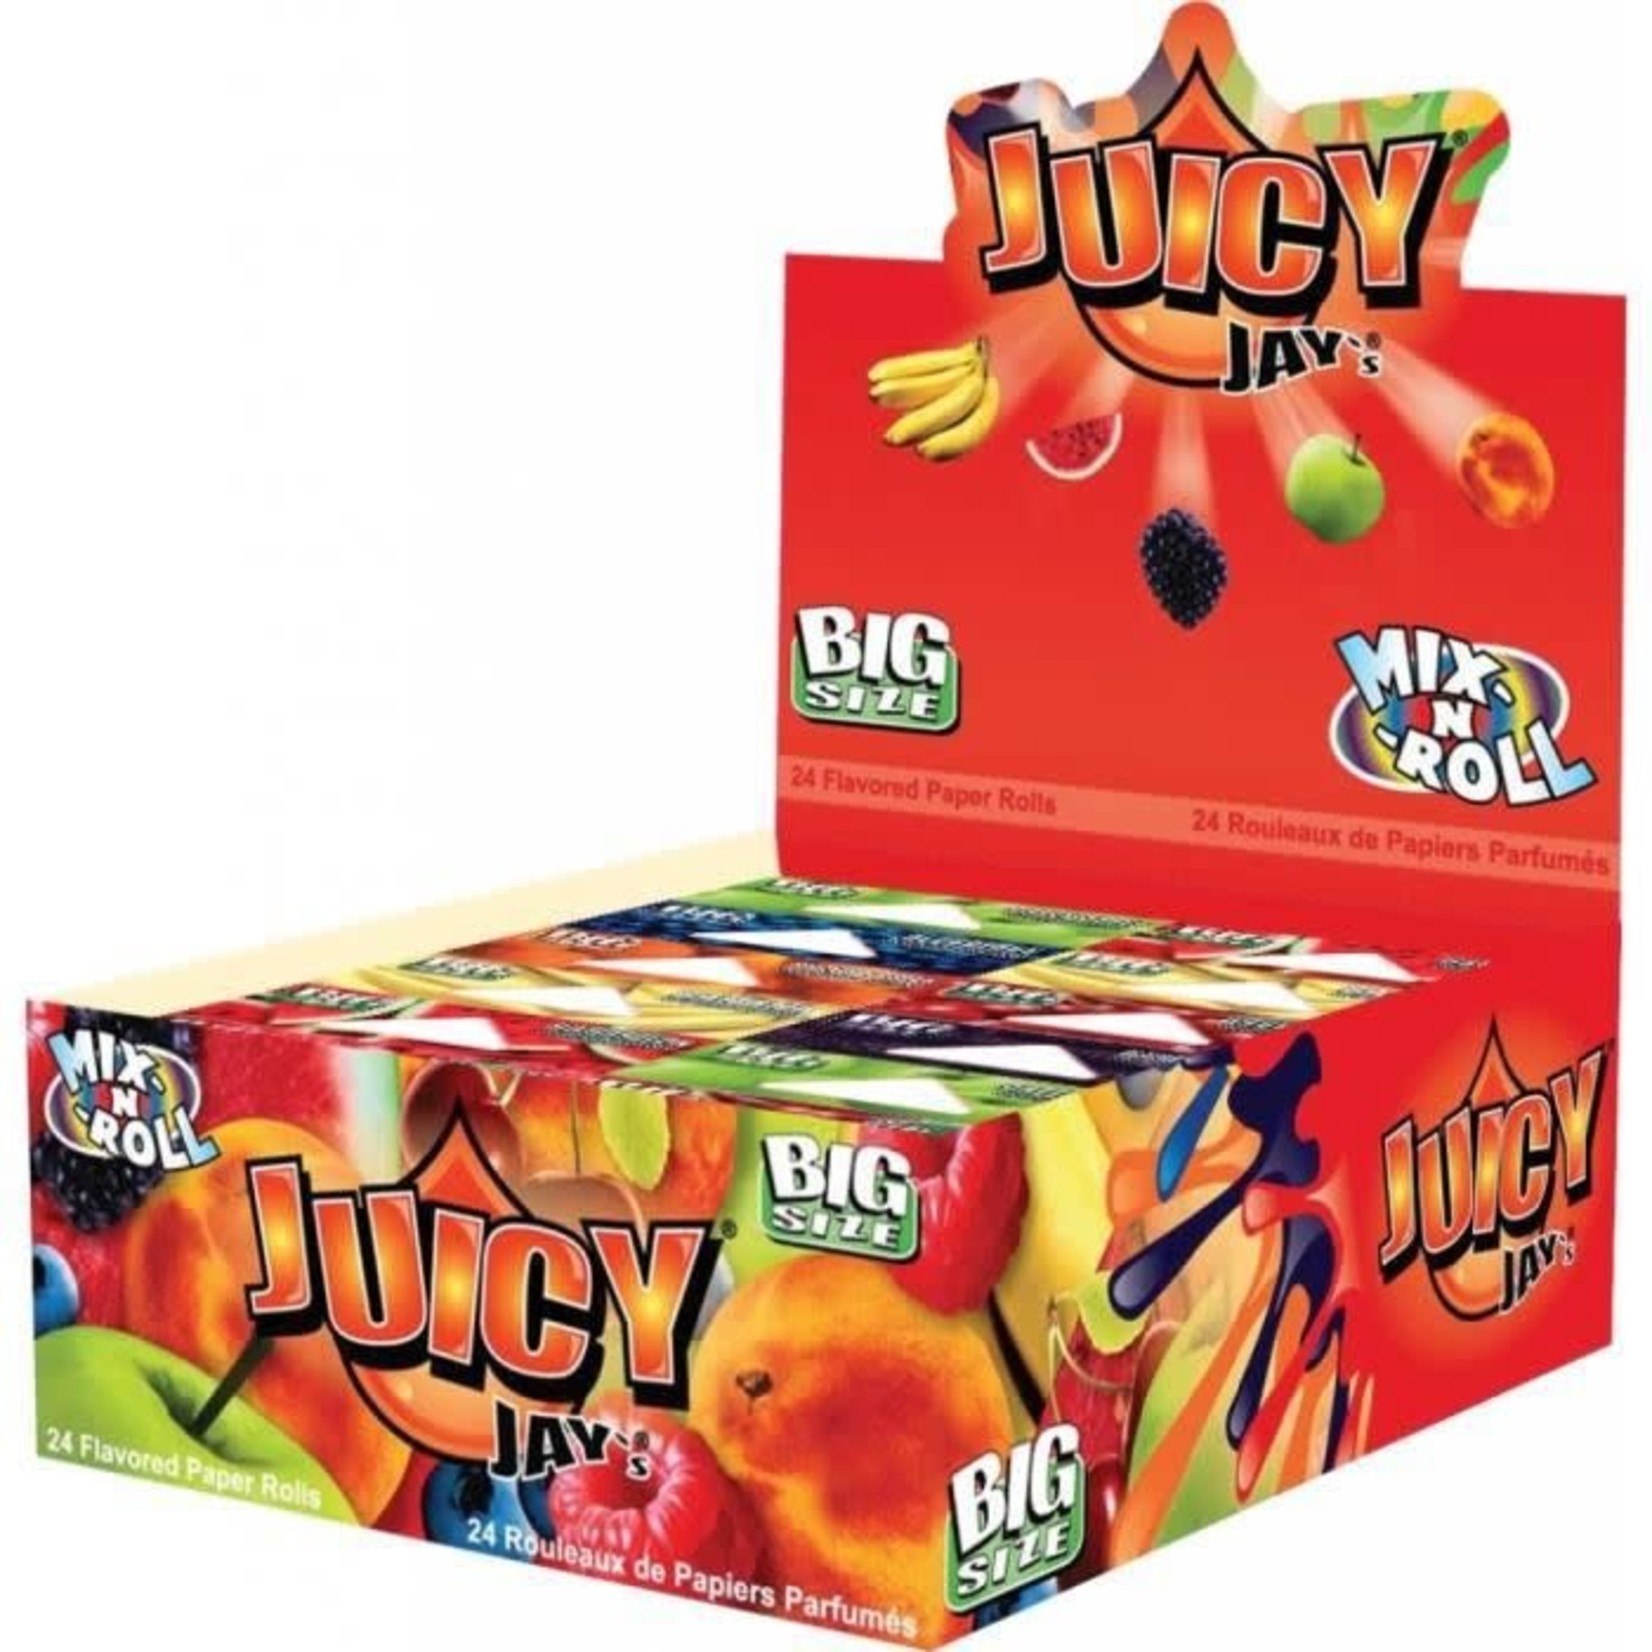 Juicy Jays - Mix rolls